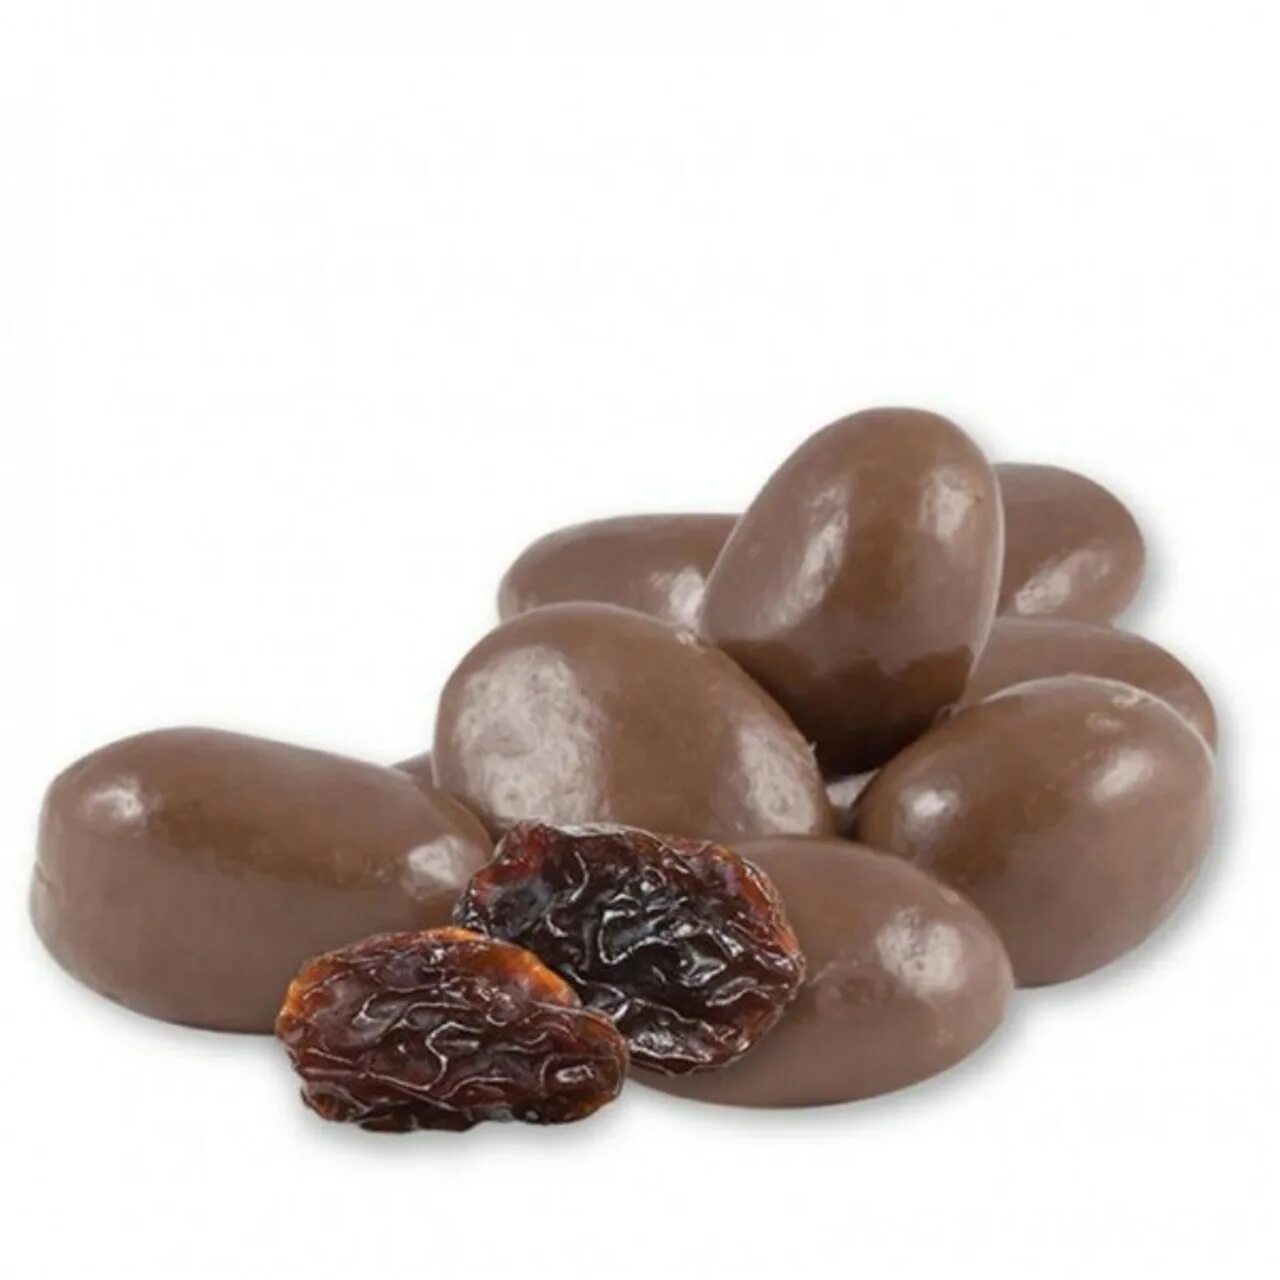 Изюм в шоколаде Raisins. Драже Изюм джамбо в бельгийском Молочном шоколаде (премиум). Изюм в шоколадной глазури. Конфеты Изюм в шоколаде. Изюм в шоколаде купить